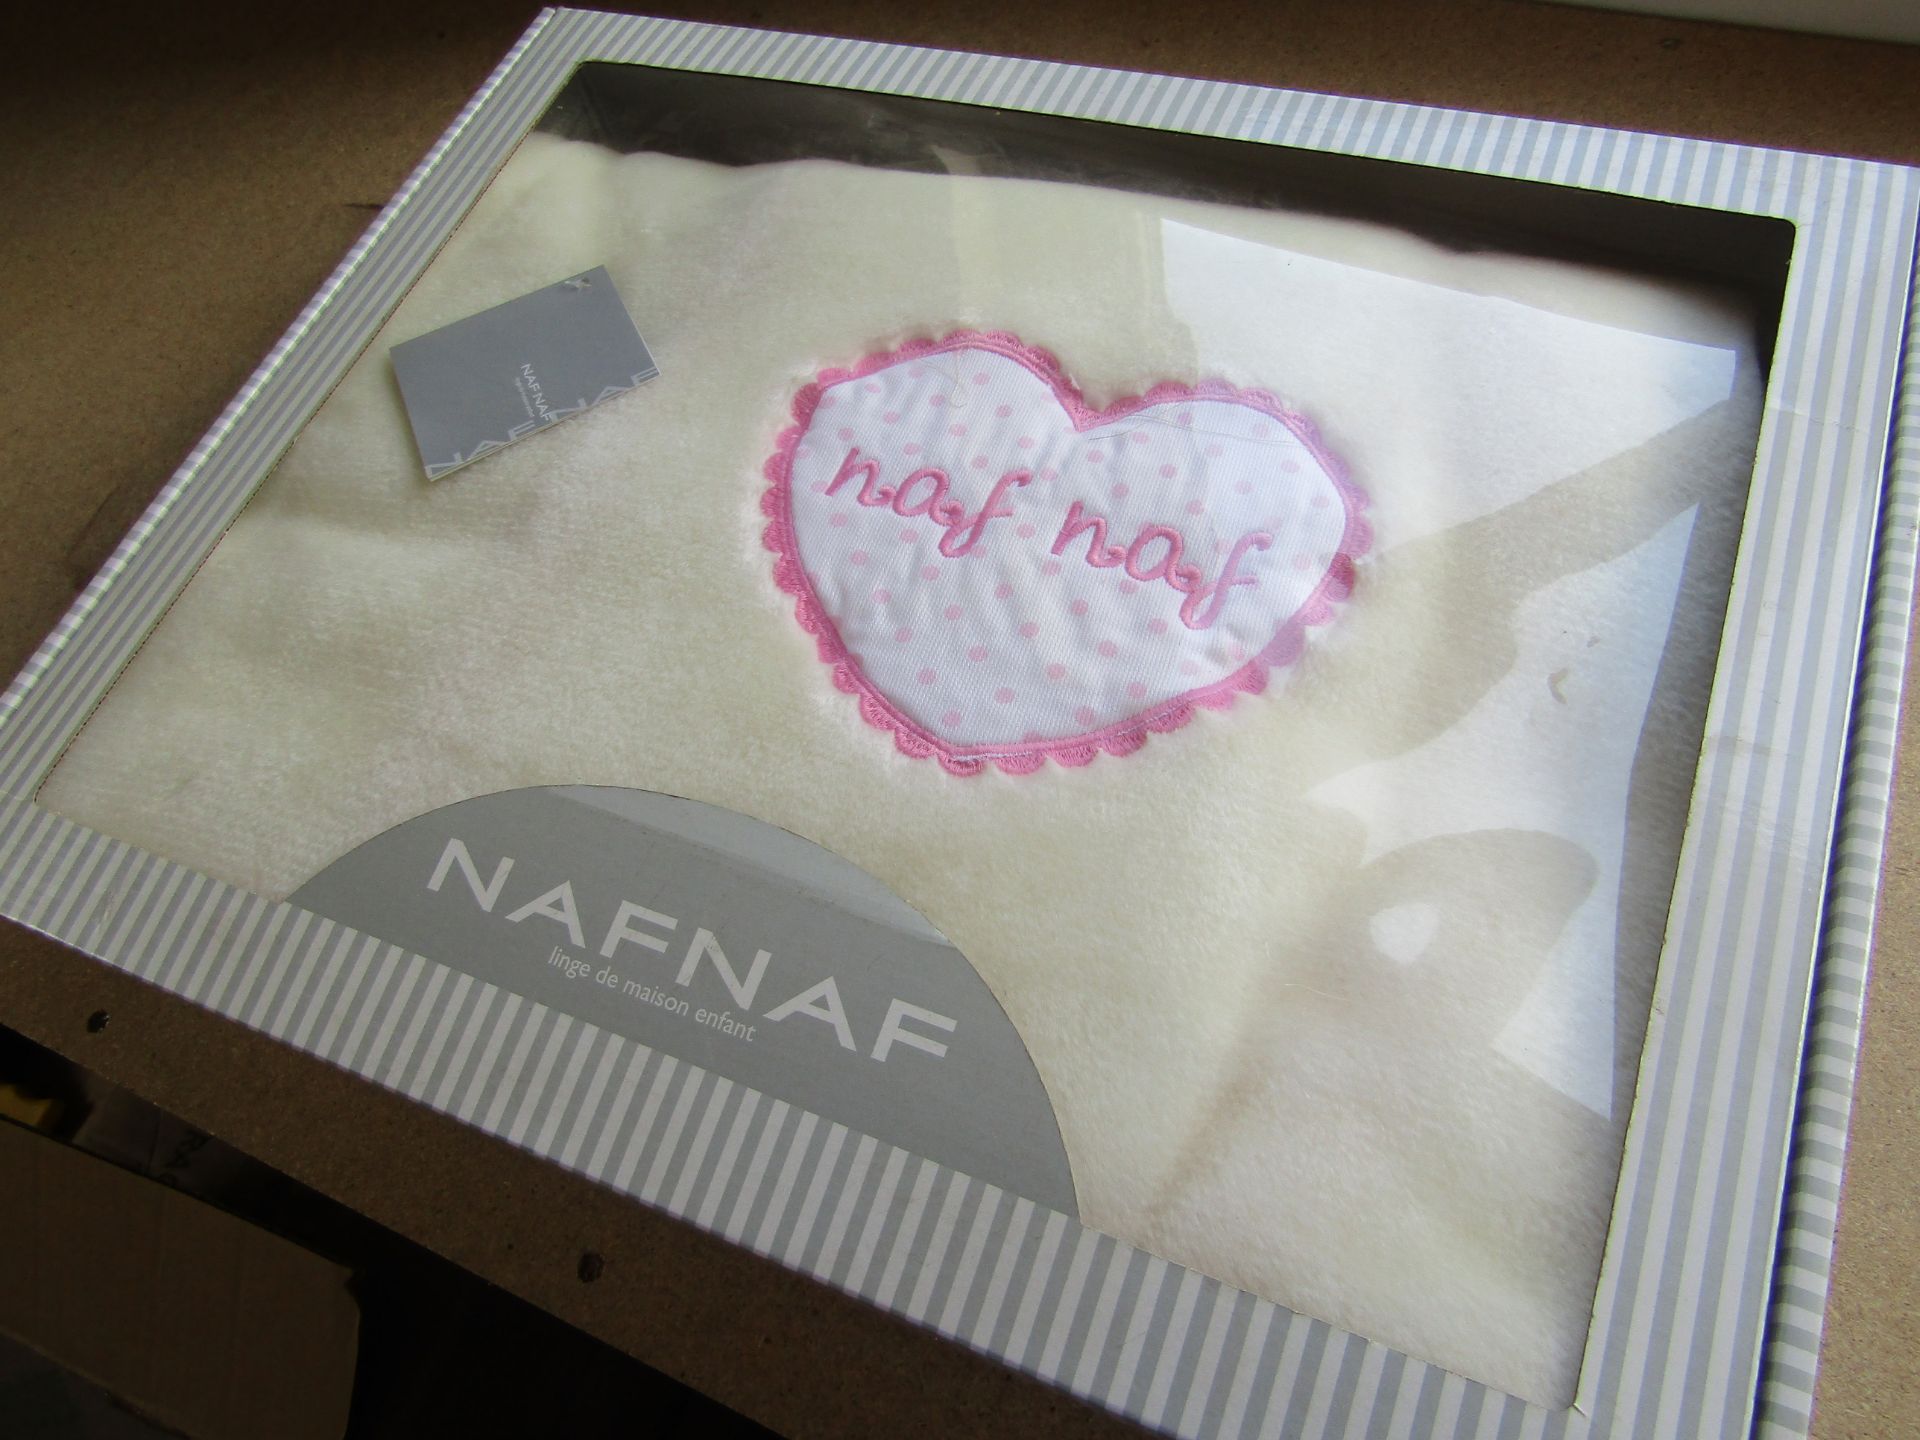 NafNaf Soft Raschell Blanket - Image 2 of 2